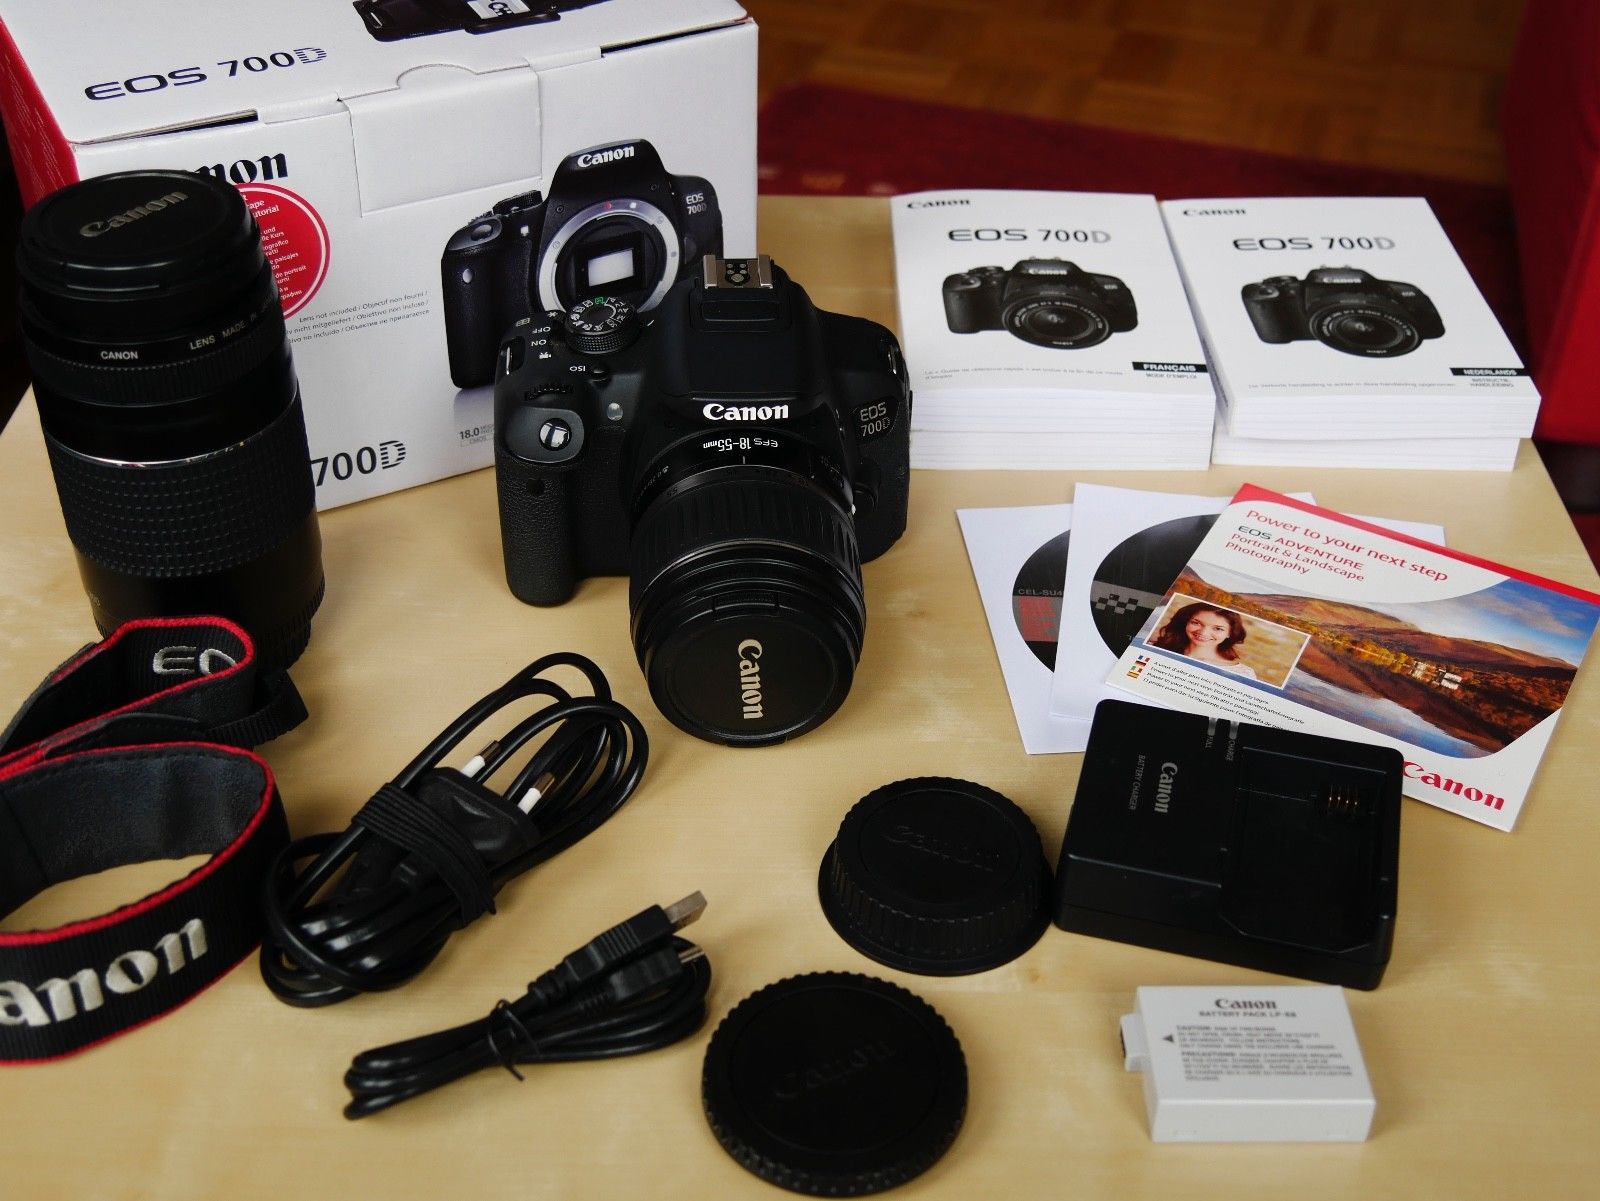 Canon EOS 700D 18.0 MP Digitalkamera mit zwei Objektiven, 1A Zustand